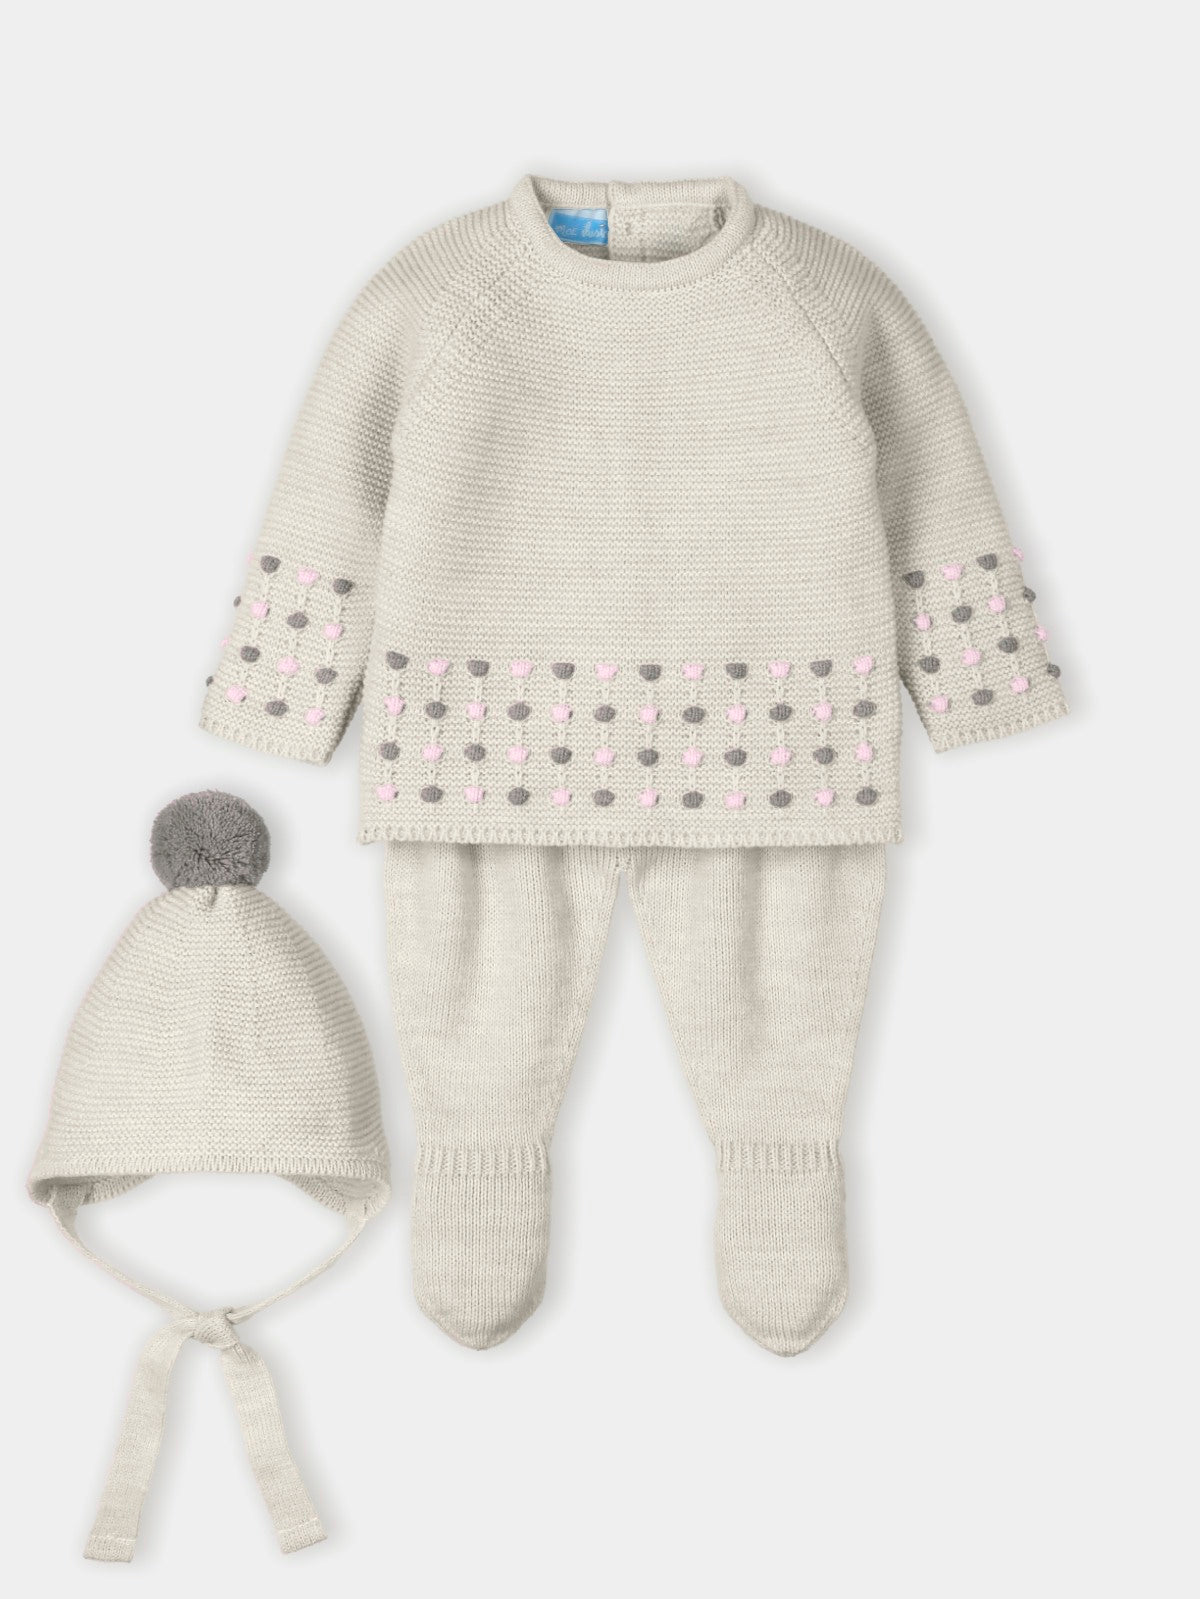 Mac Ilusion Unisex Baby Beige & Pink 3 Piece Knit Set